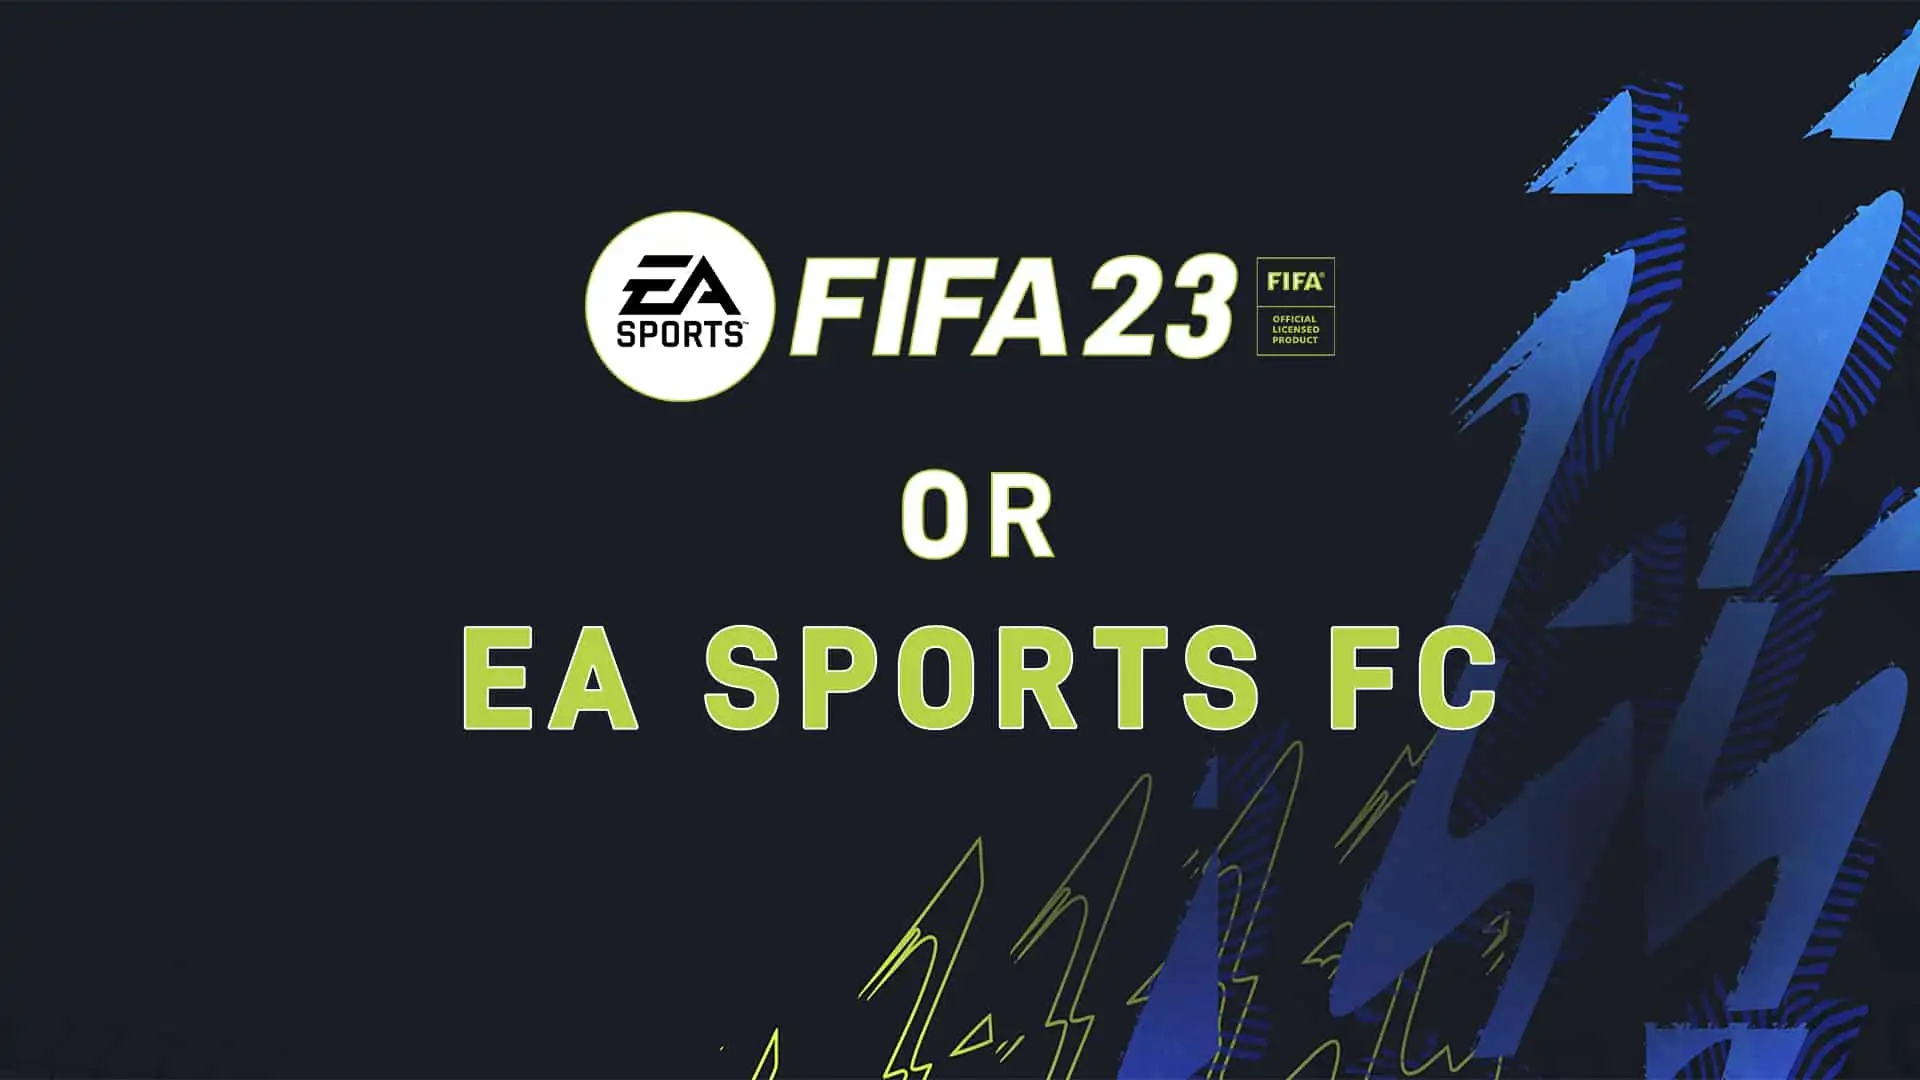 EA Sports Football Club FIFA 23